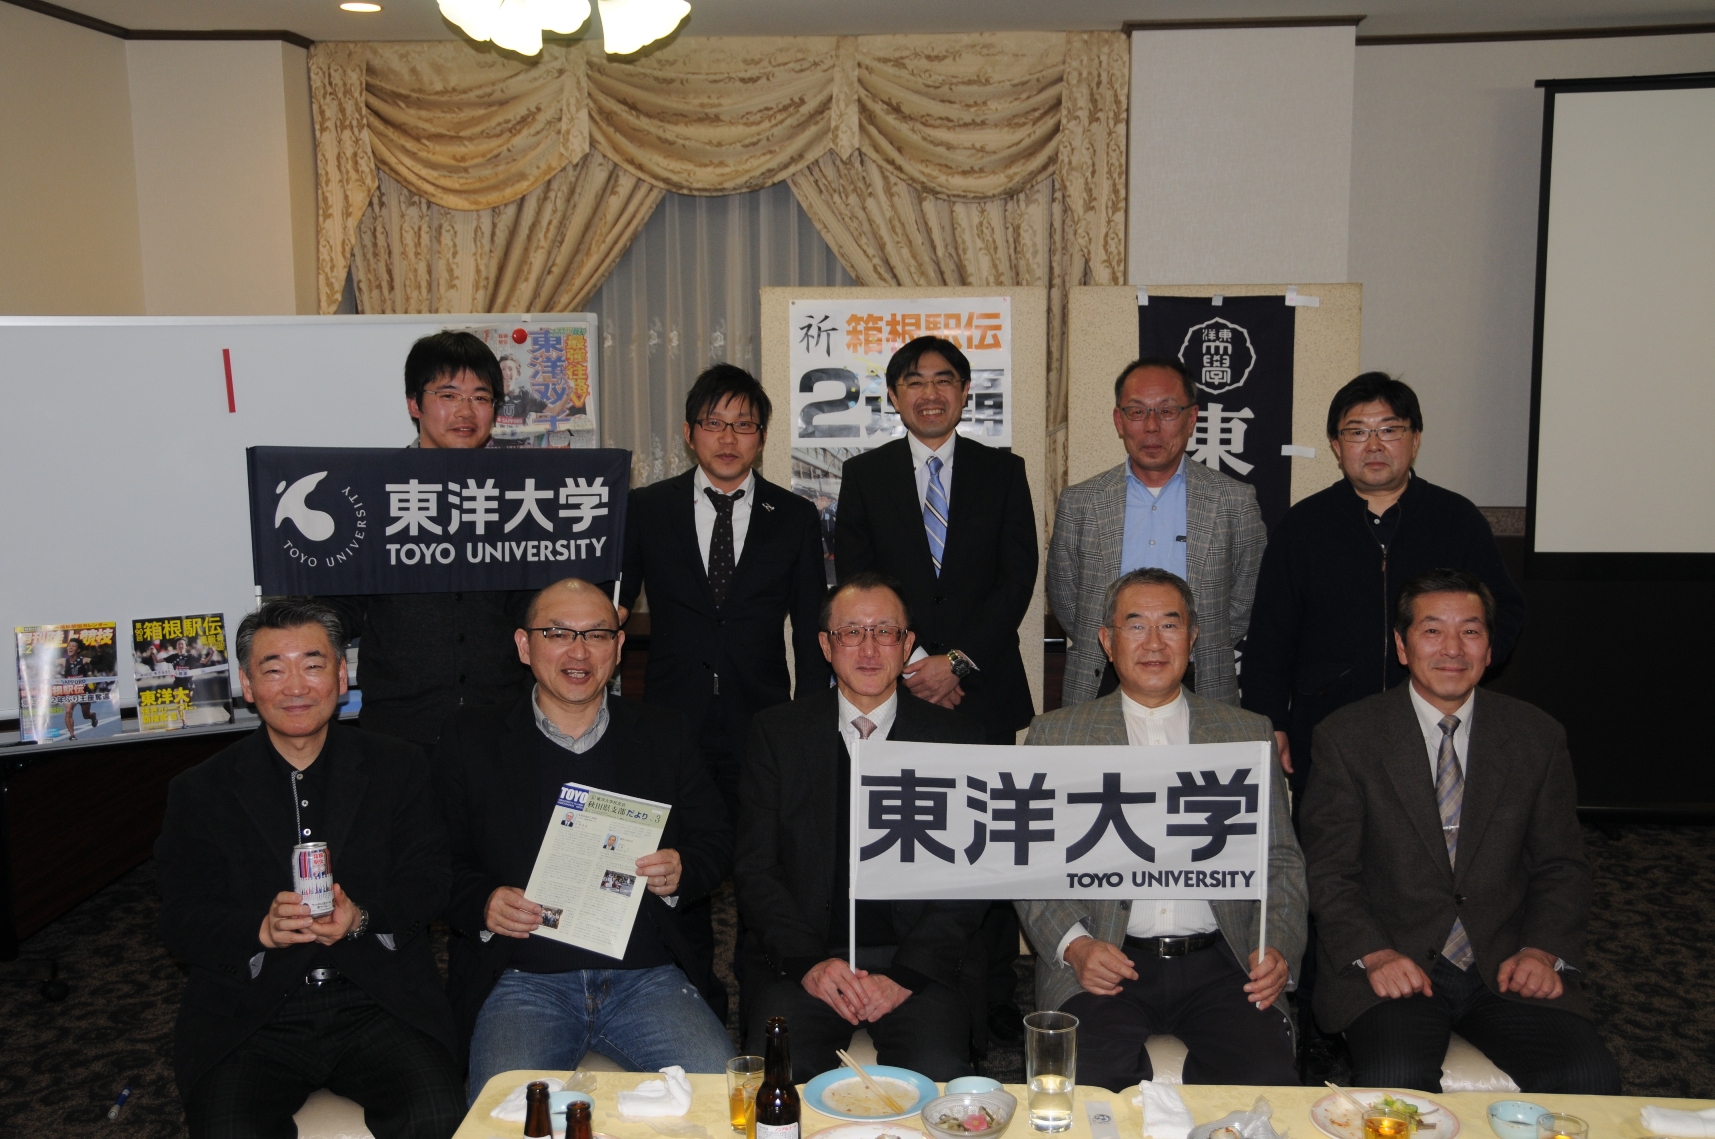 http://www.alumni-toyo.jp/branch/akita/2014/04/20/DSC_8603.JPG